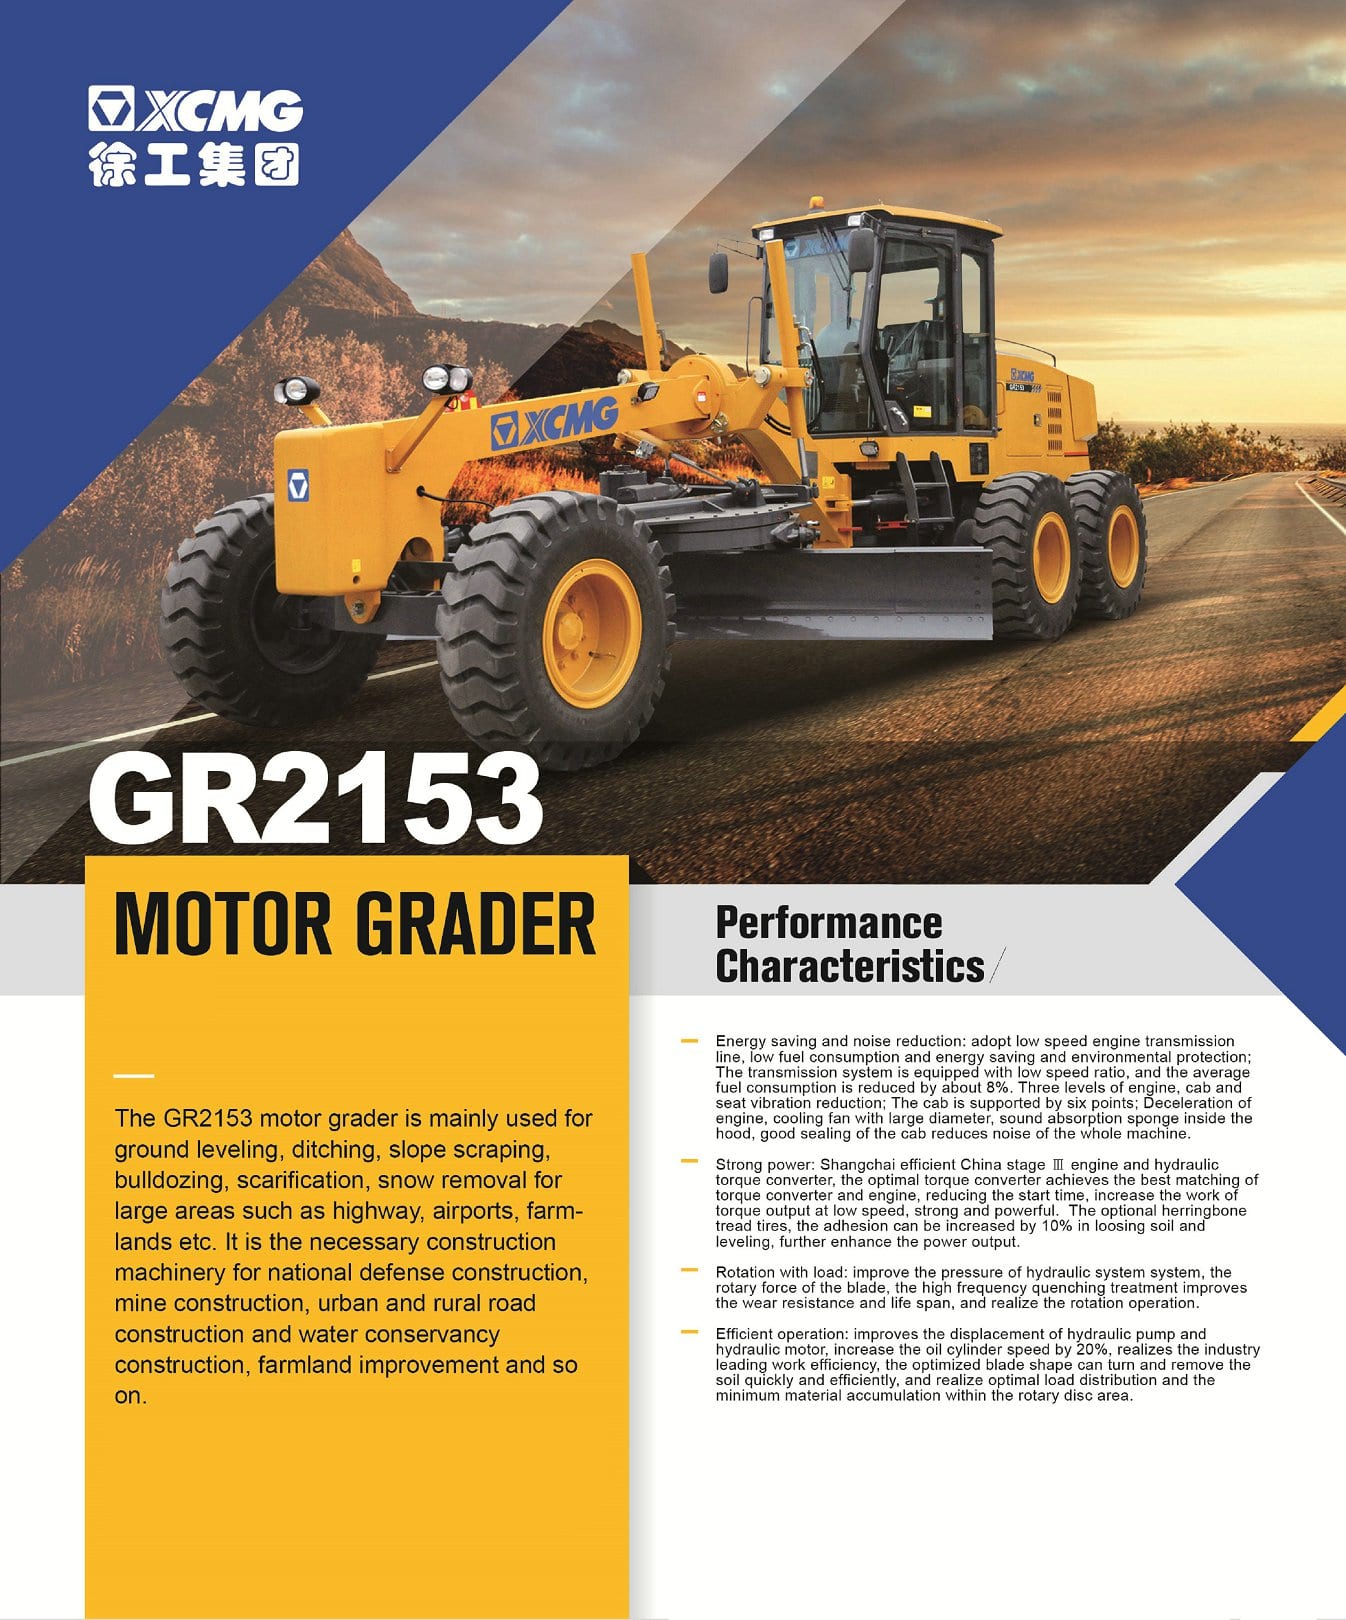 XCMG Official GR2153 Motor Grader for sale